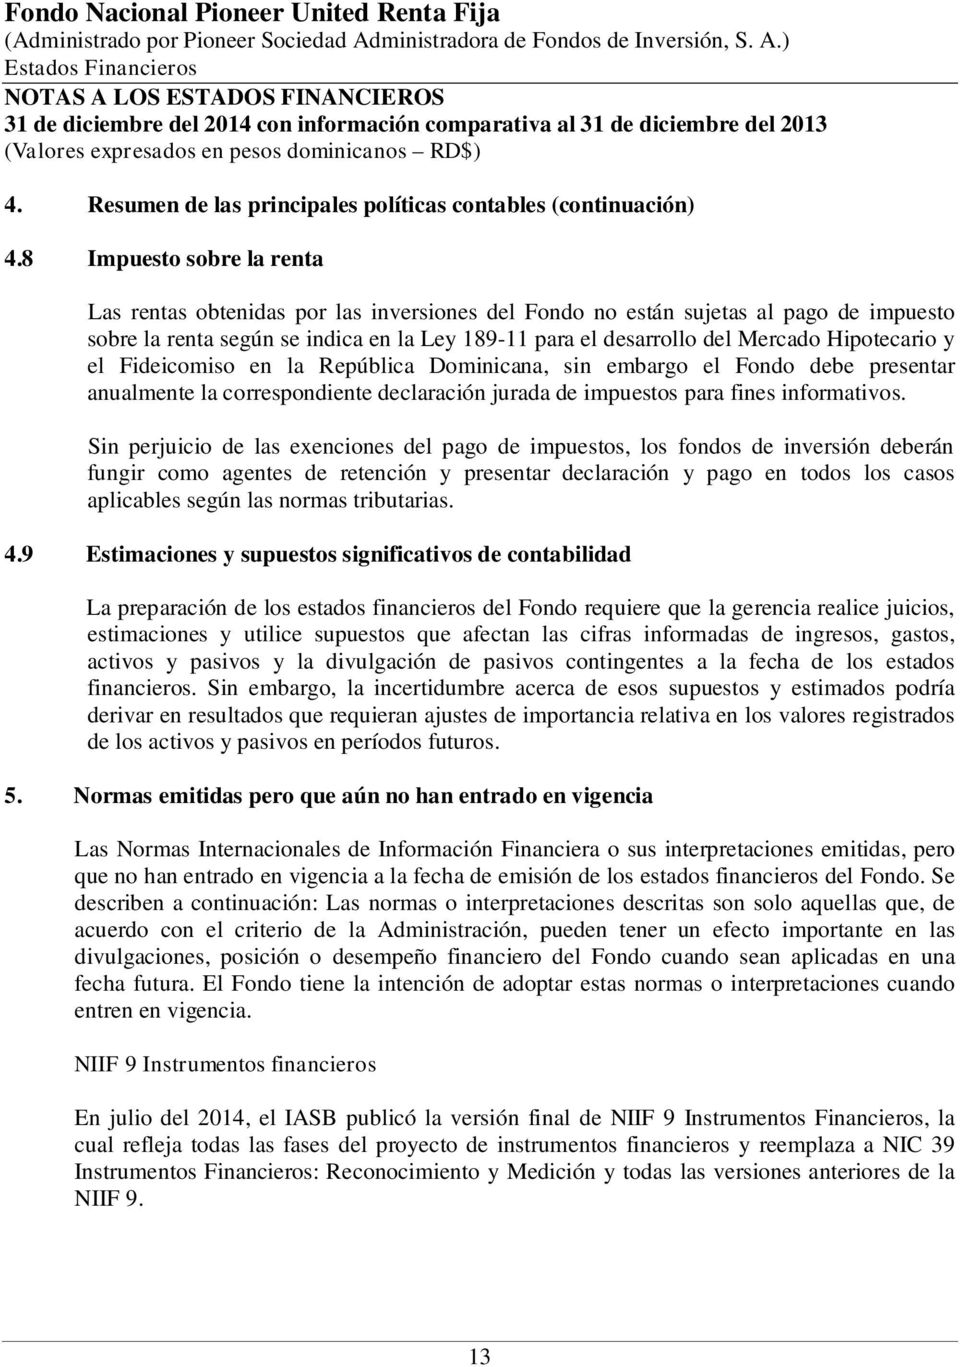 Hipotecario y el Fideicomiso en la República Dominicana, sin embargo el Fondo debe presentar anualmente la correspondiente declaración jurada de impuestos para fines informativos.